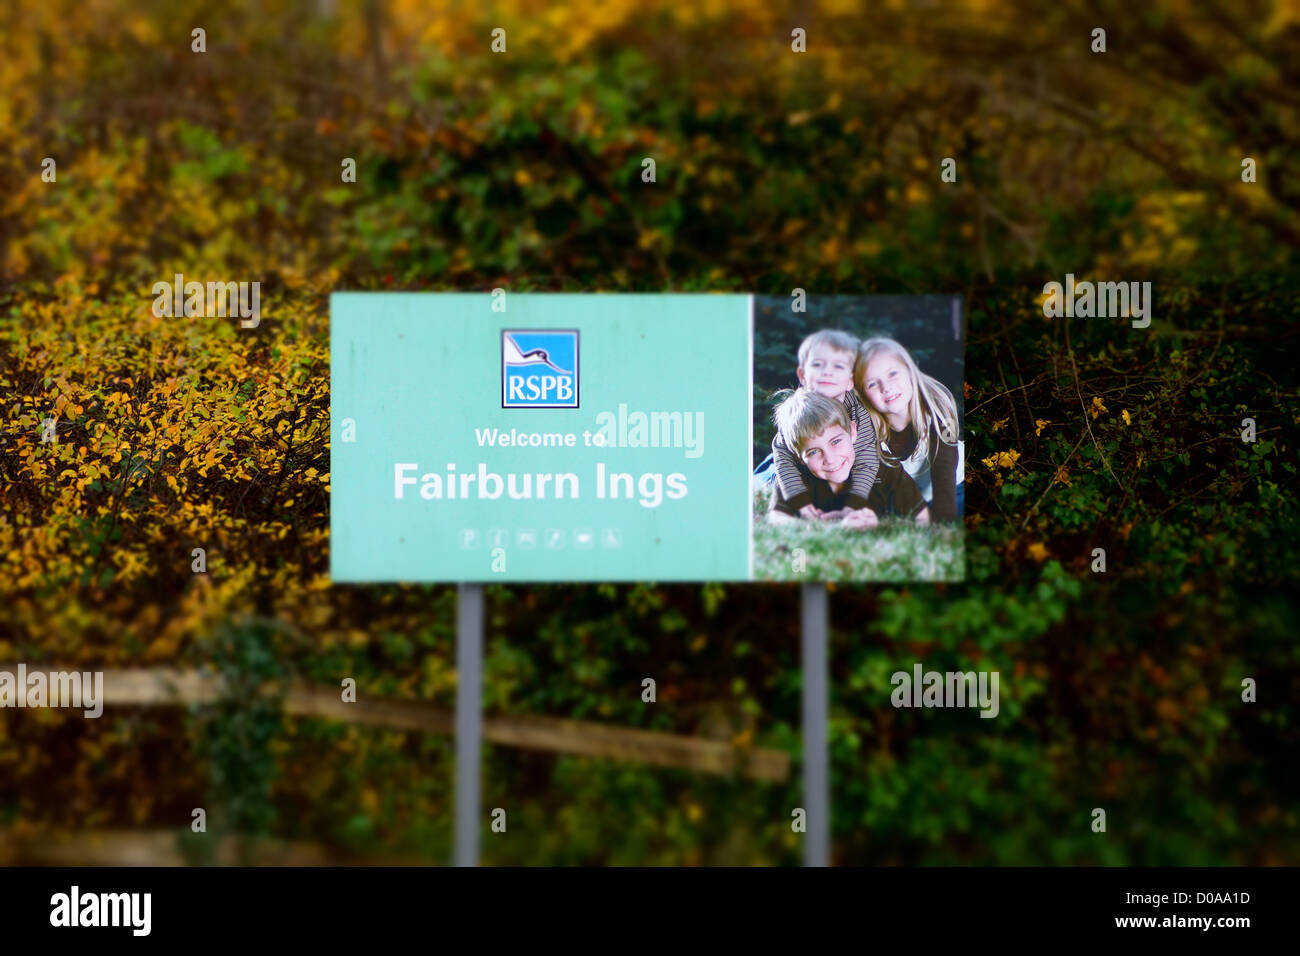 RSPB Fairburn Ings Stock Photo